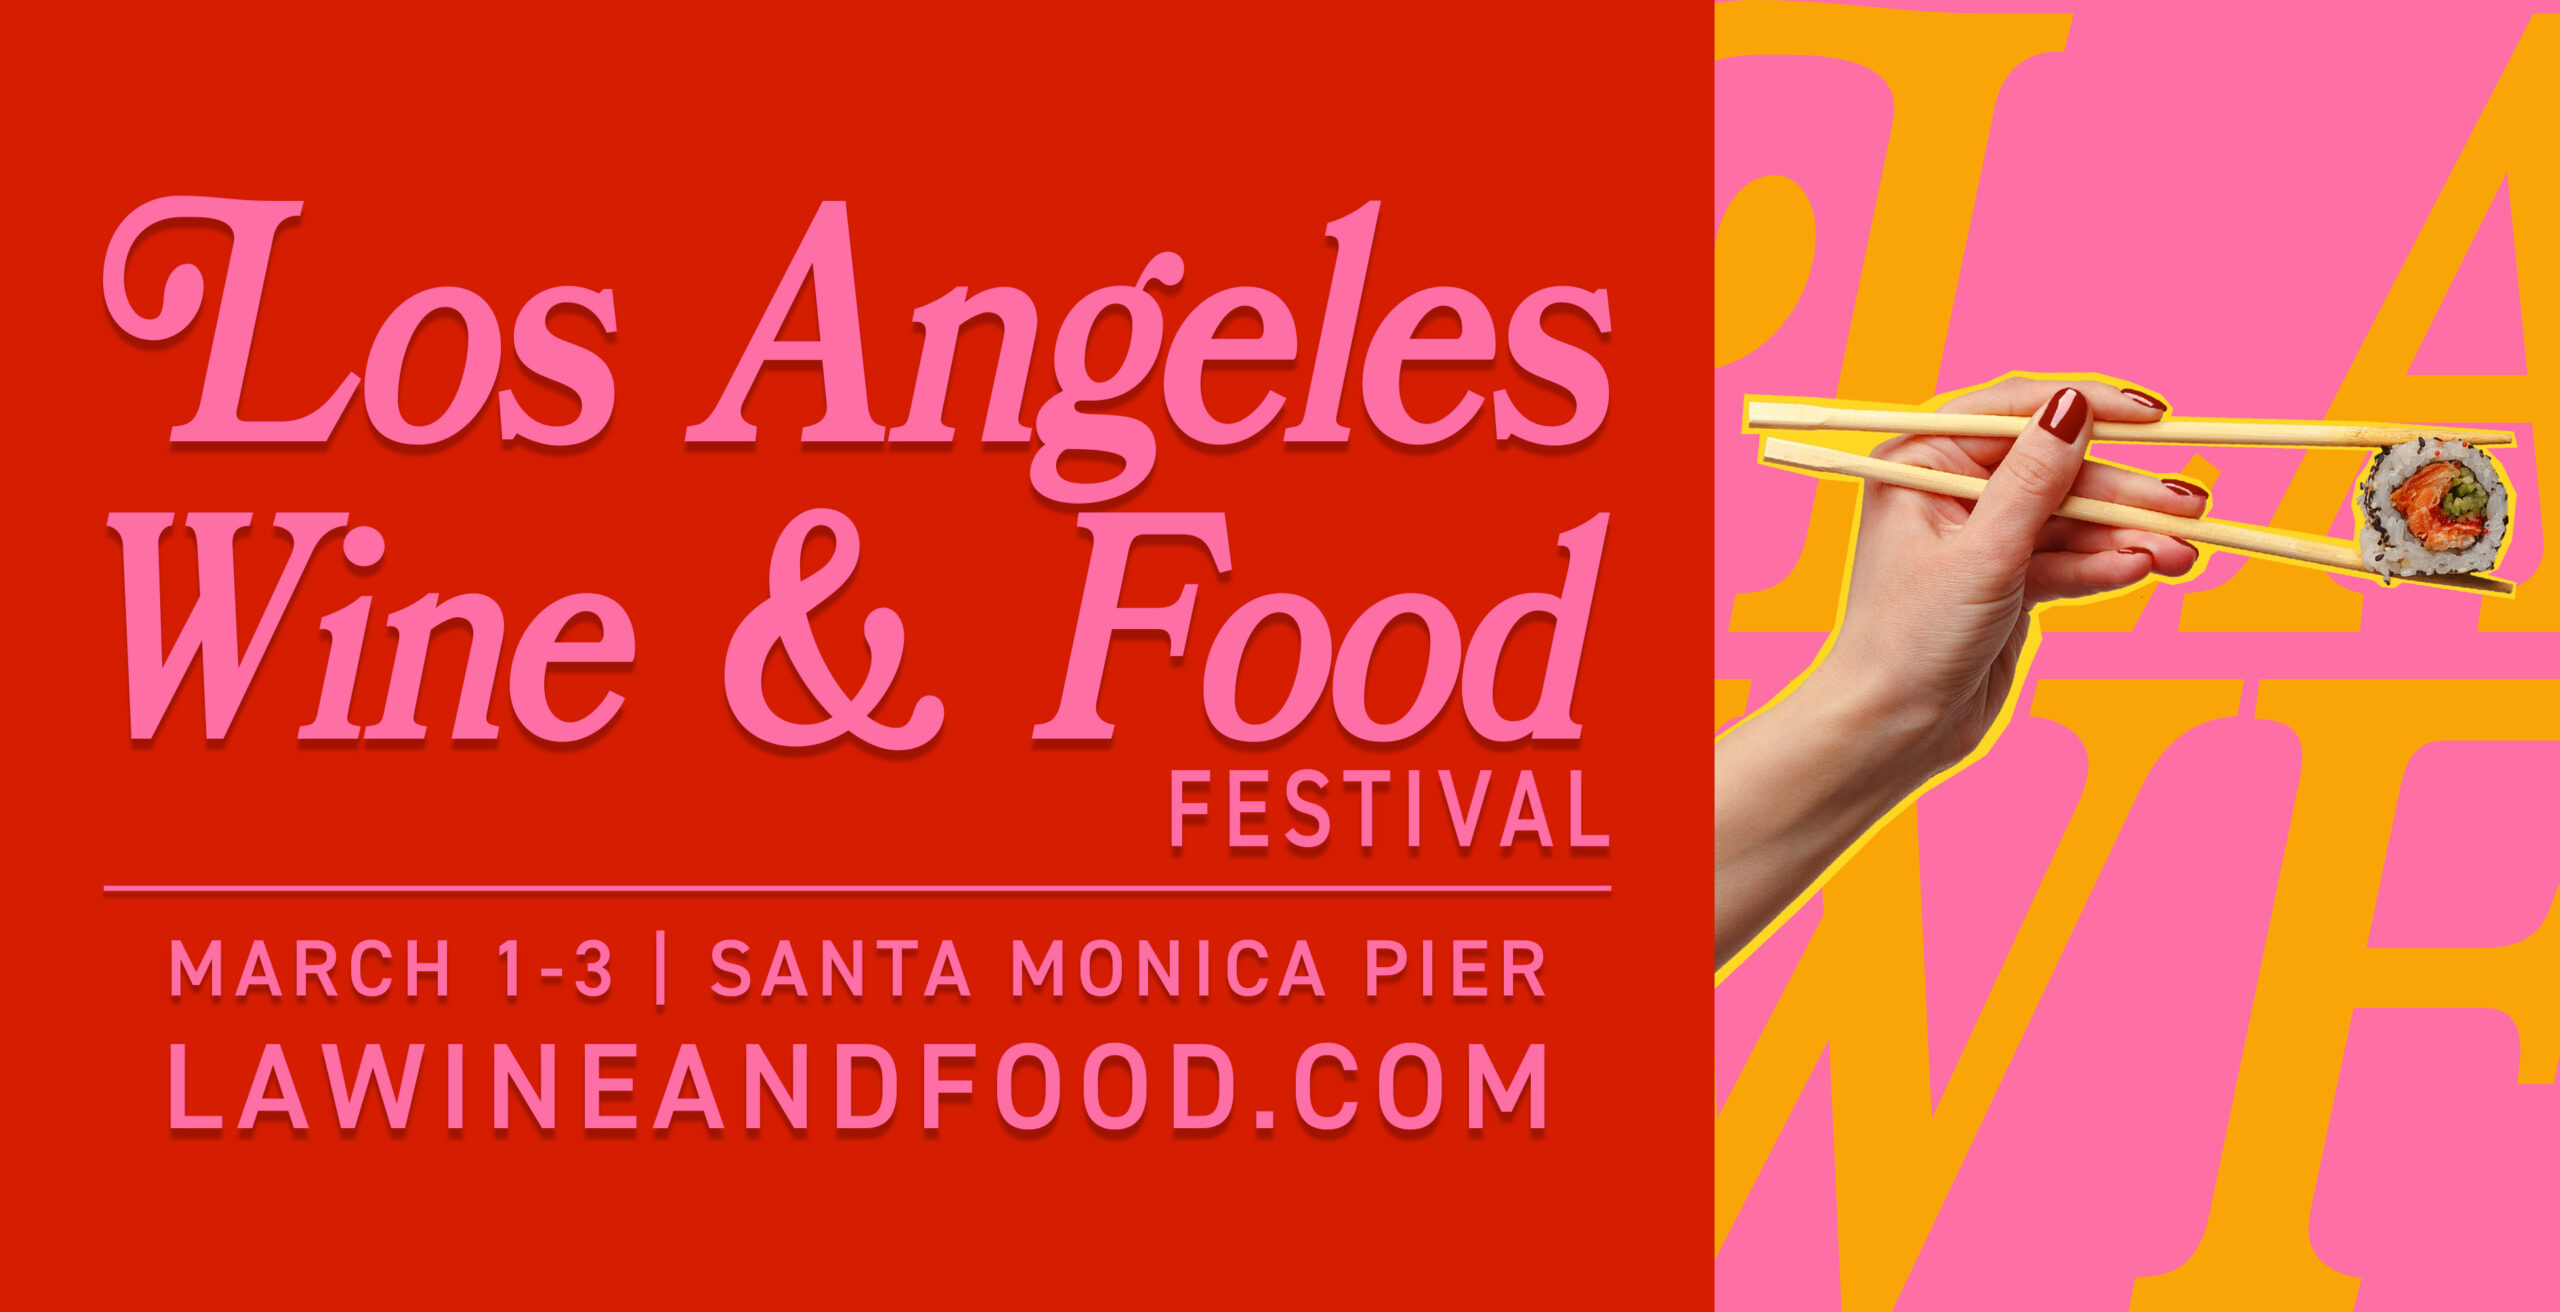 Los Angeles Wine & Food Festival Visit Santa Monica